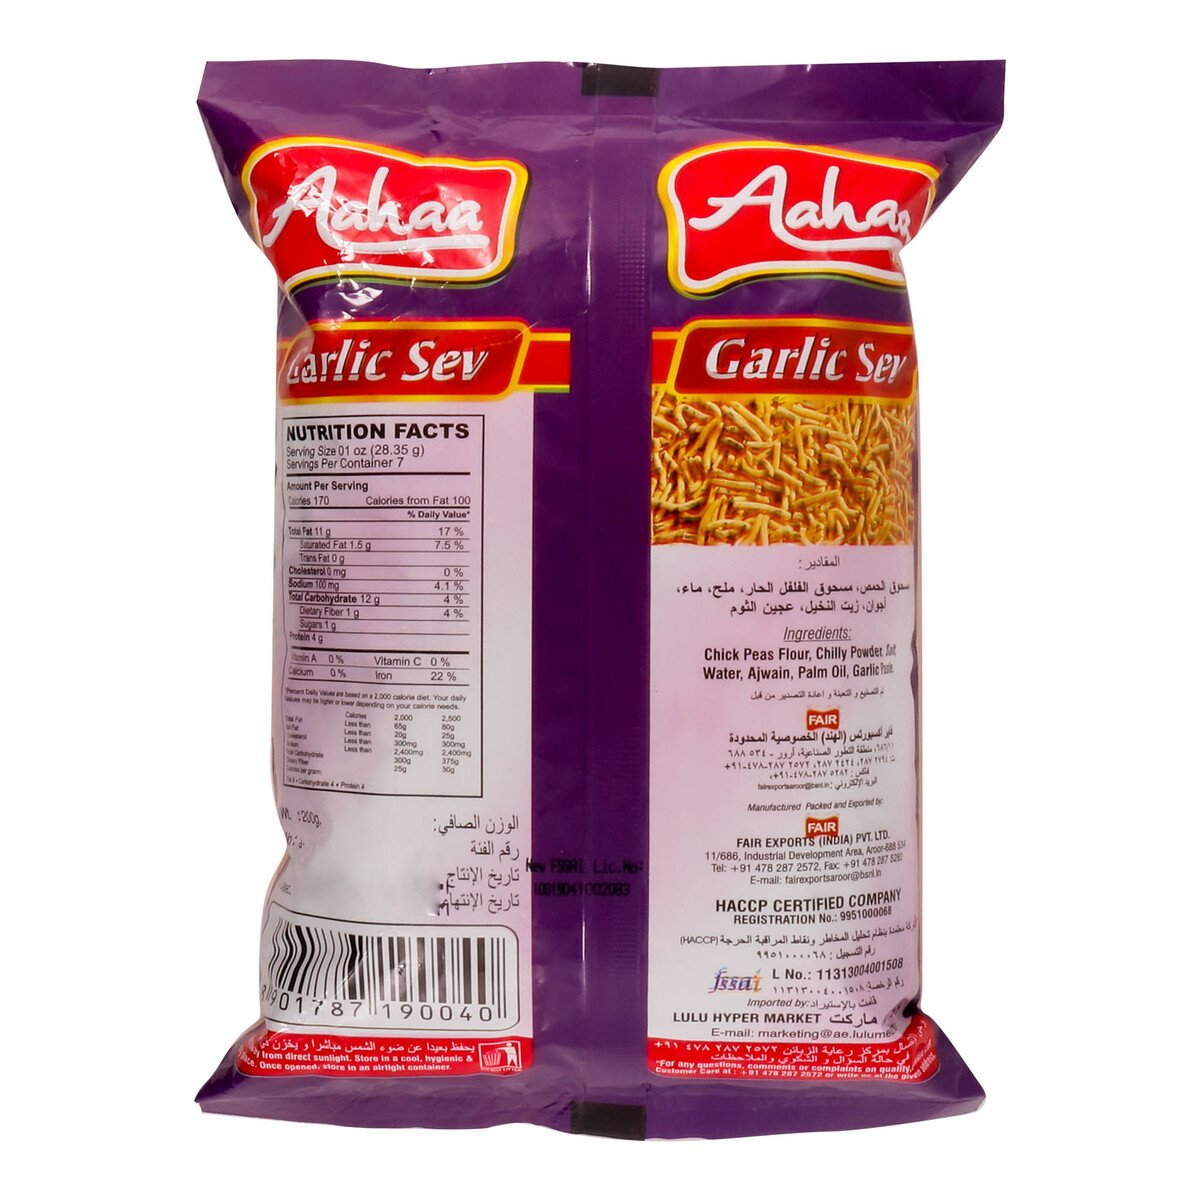 Aahaa Garlic Sev Chips 200g